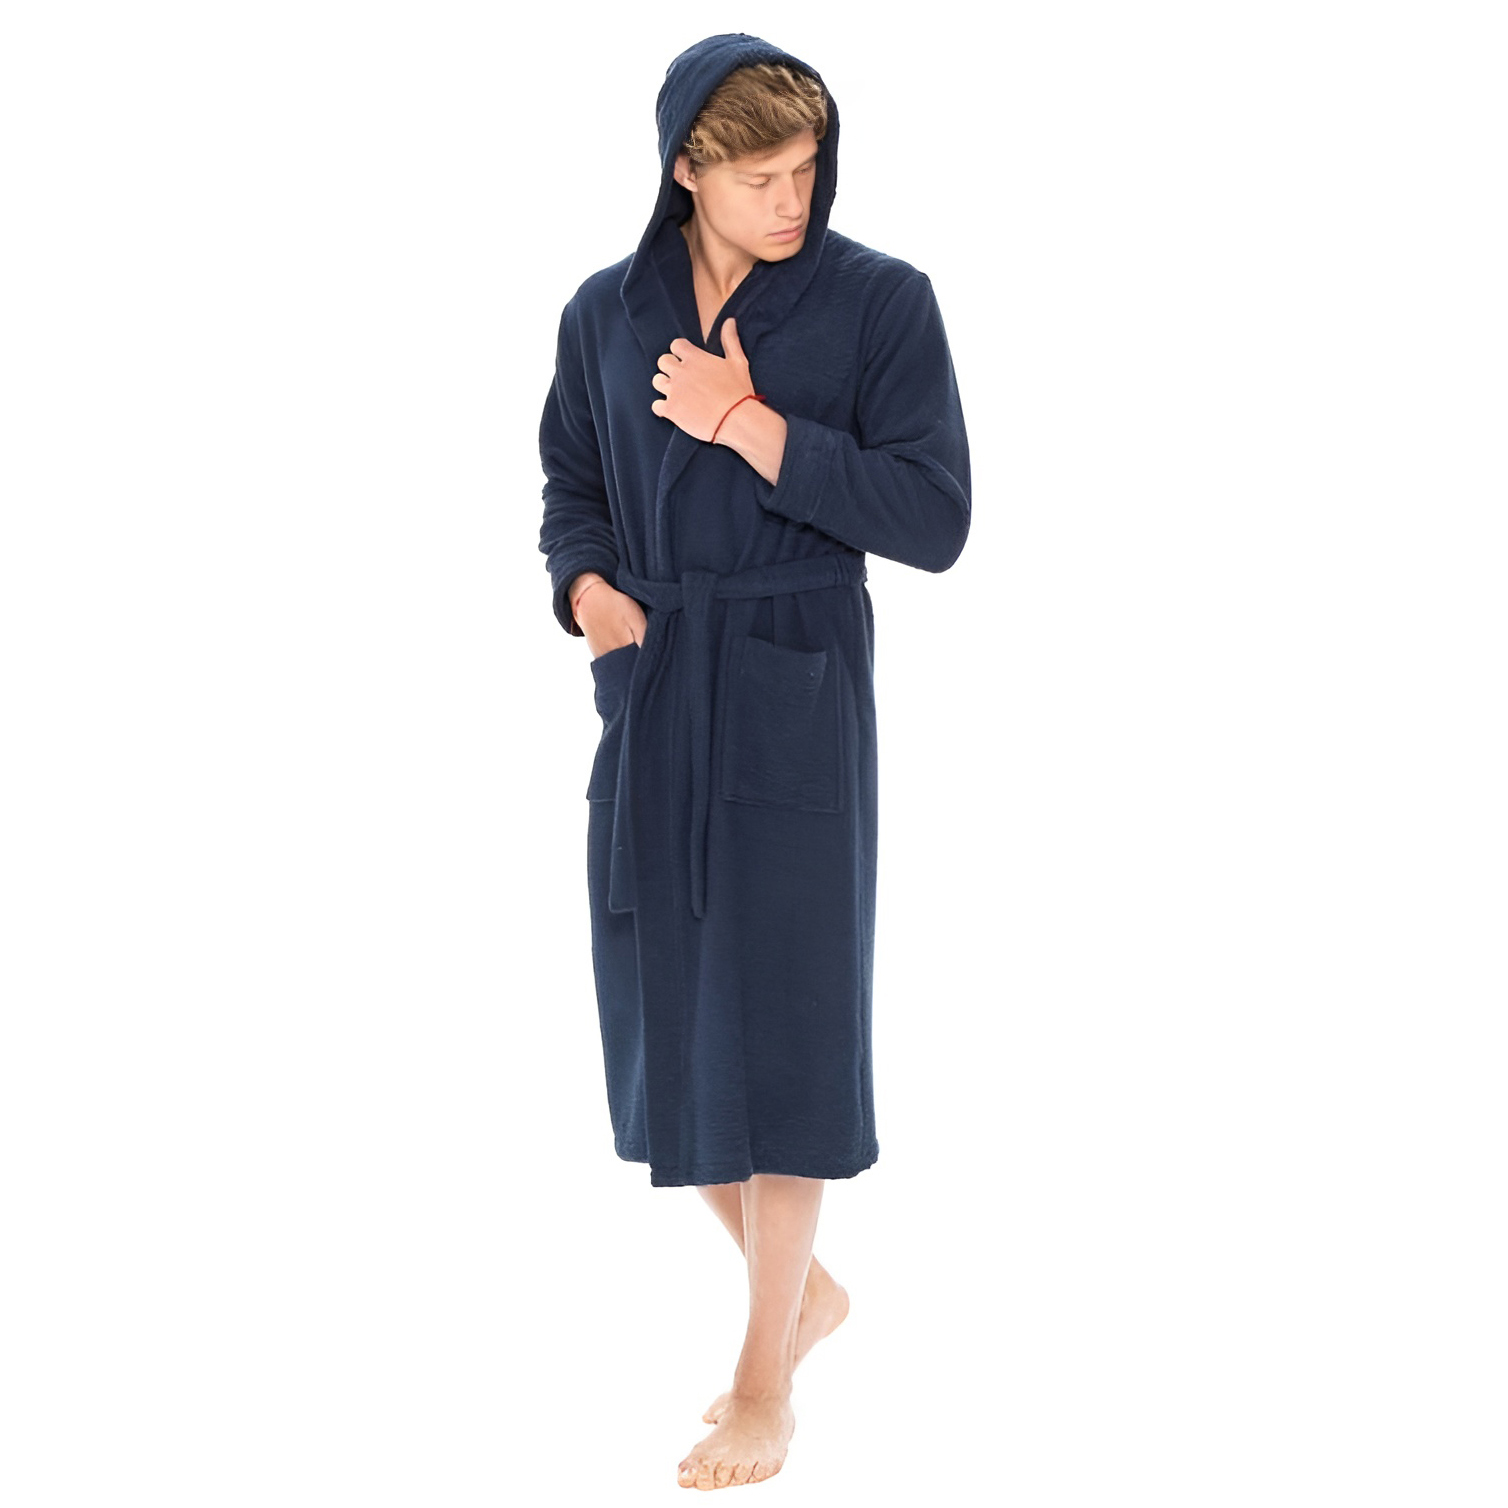 Банный халат Natural цвет: темно-синий (XL) Soft cotton